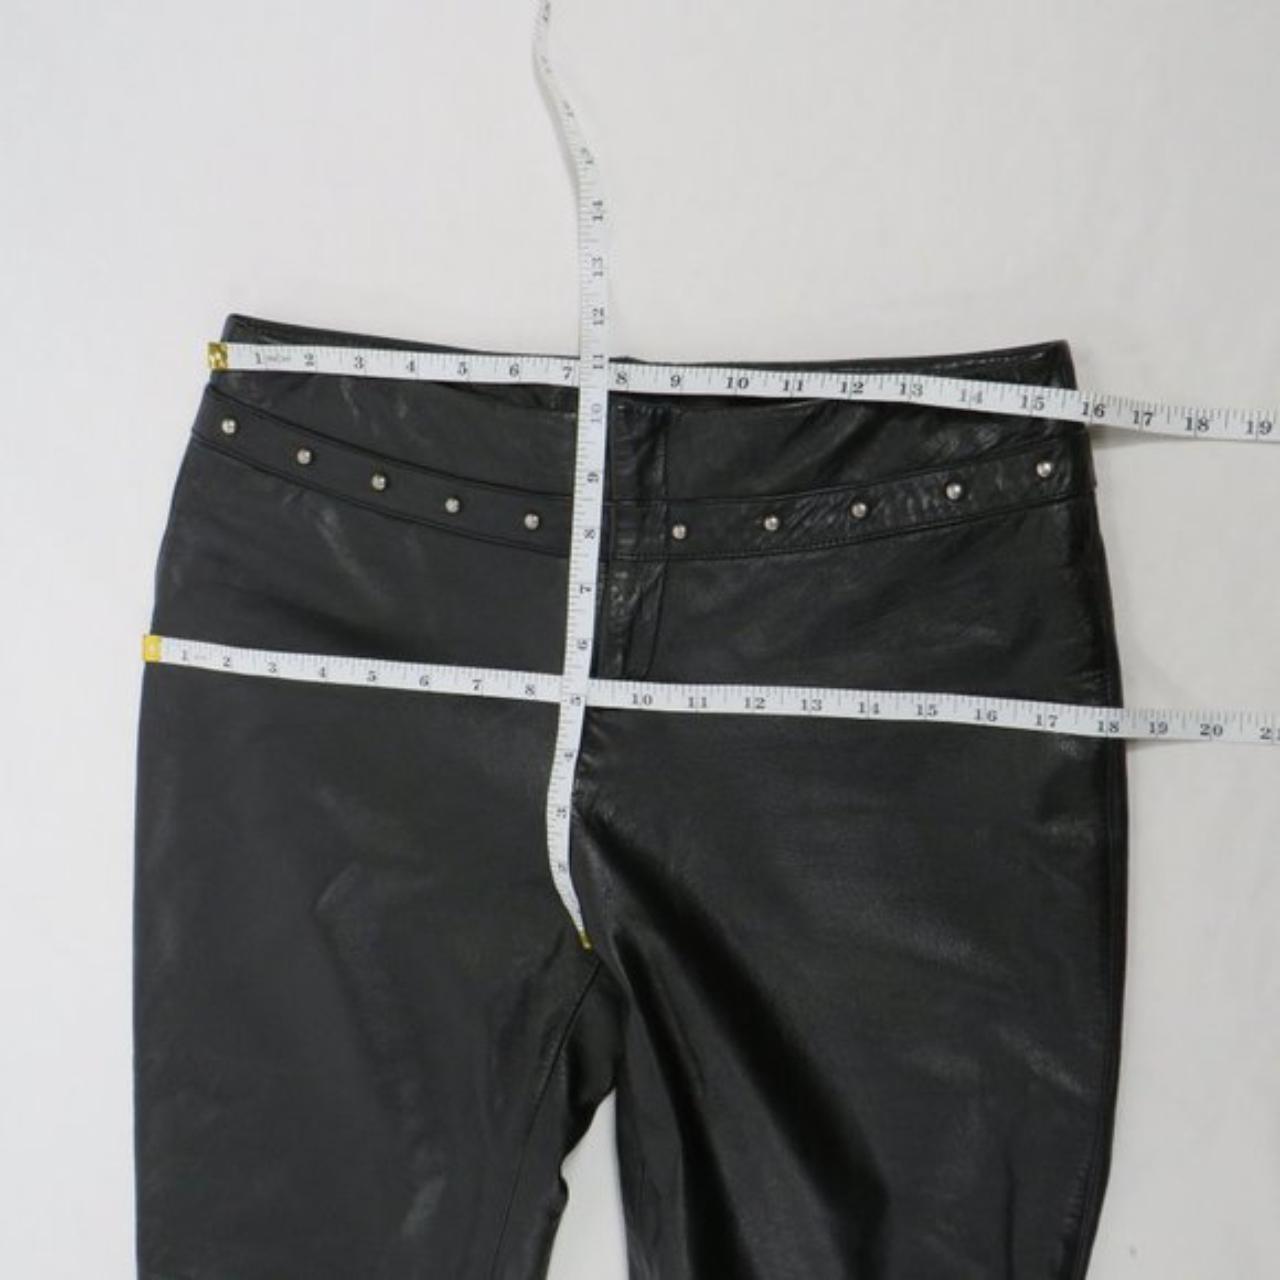 Ralph Lauren black leather mid-rise pants with - Depop